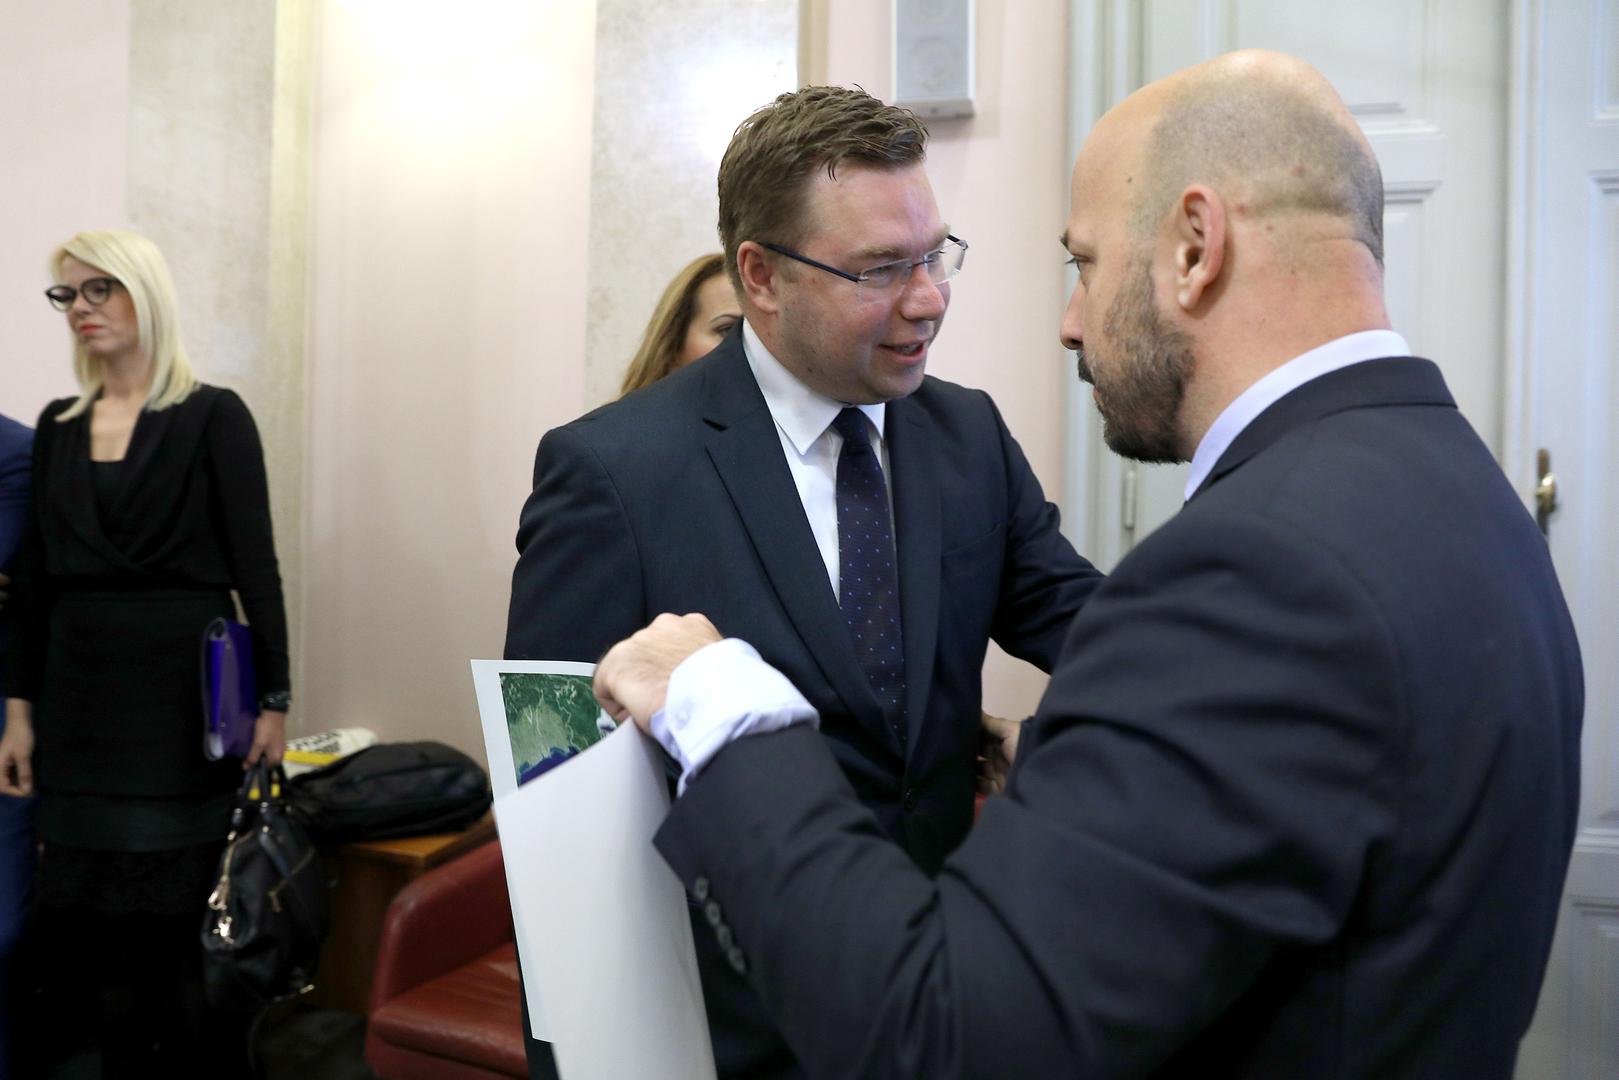 Gordan Maras na sjednicu Sabora donio je provokativni "dar" ministru rada Marku Paviću, po struci meteorologu.